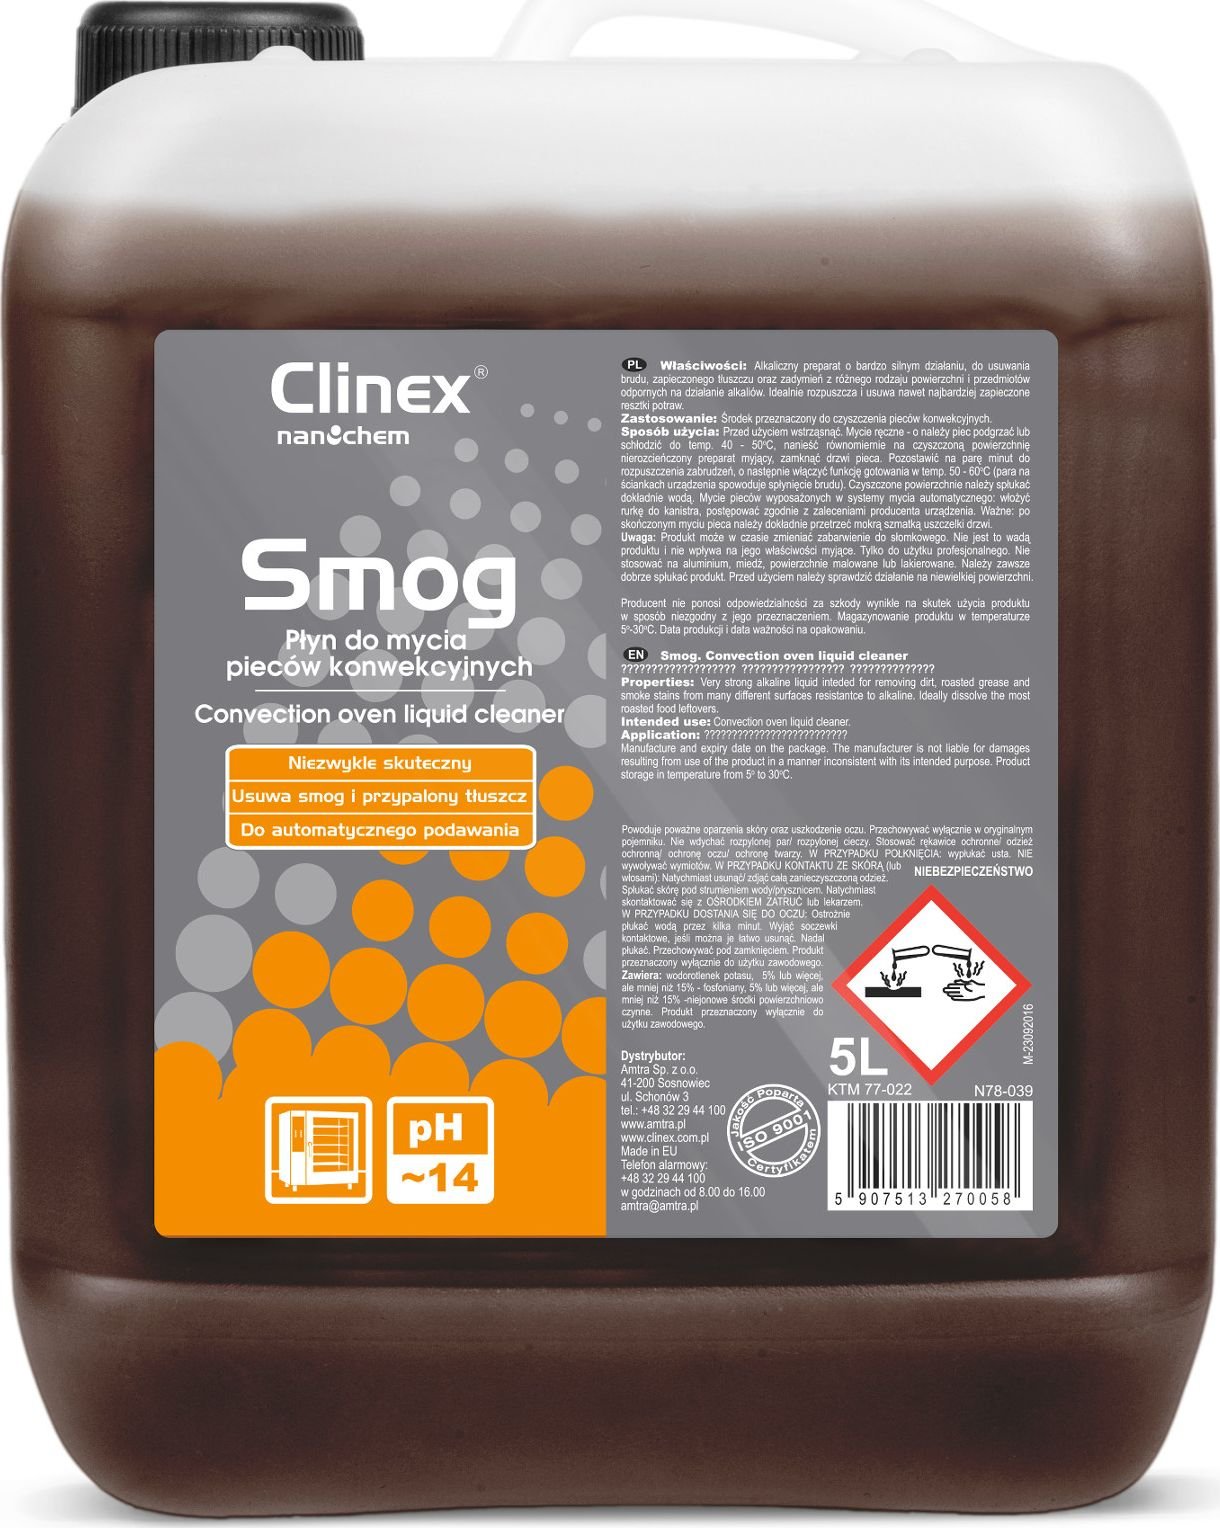 Clinex Lichid puternic puternic pentru curățarea cuptoarelor combi-abur CLINEX Smog 5L Smokehouse Lichid puternic eficient pentru curățarea cuptoarelor combi-abur CLINEX Smog 5L